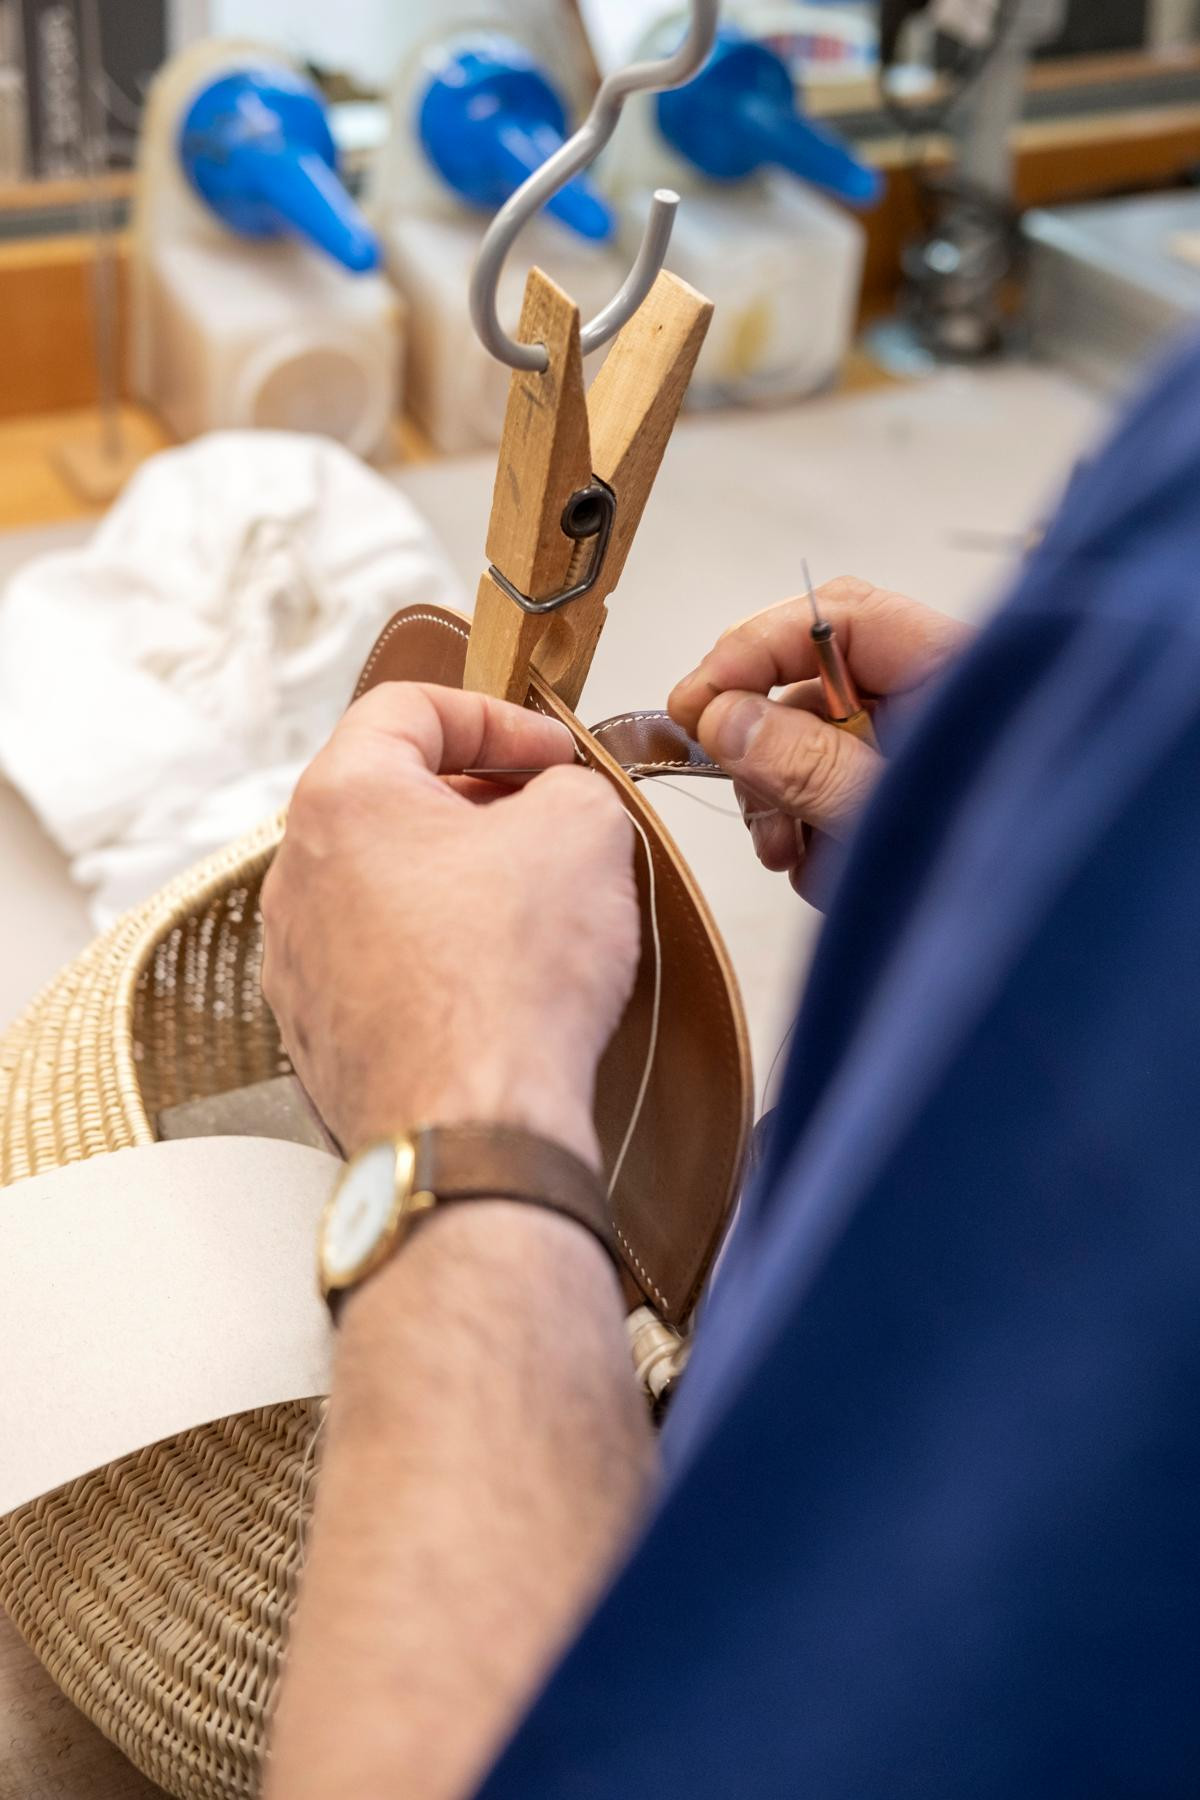 L’art de la main: pour réaliser ce petit panier de pêche, les artisans mettent en œuvre des techniques traditionnelles telles que le point sellier. (Photo: Eric Chenal)